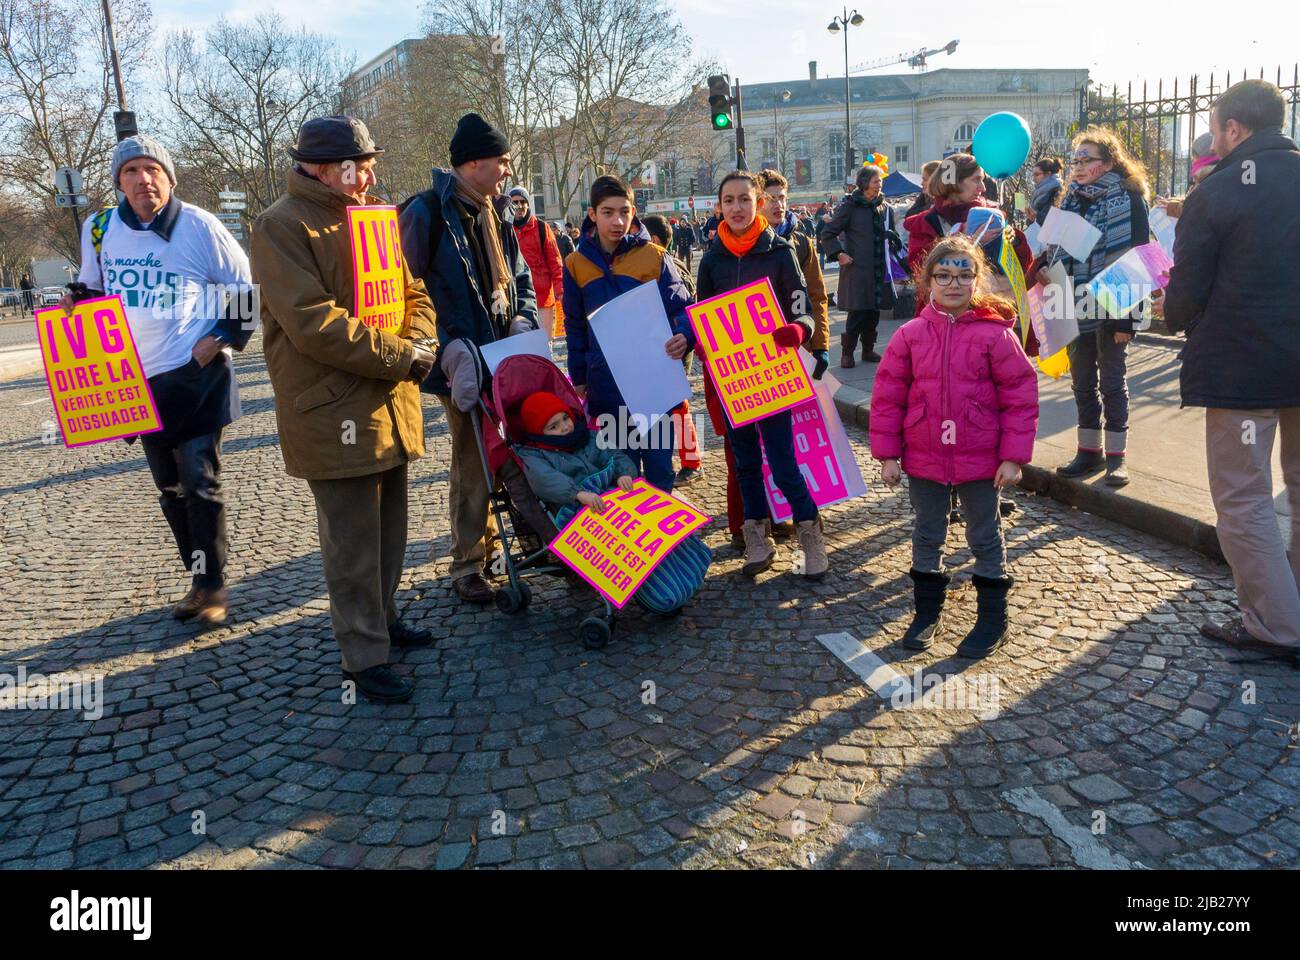 Parigi, Francia, pubblico medio, famiglia con bambini tradizionalisti, Pro-Life, ATTIVISMO cristiano, dimostrazione anti-aborto, "March Pour la vie" (March for Life) Foto Stock